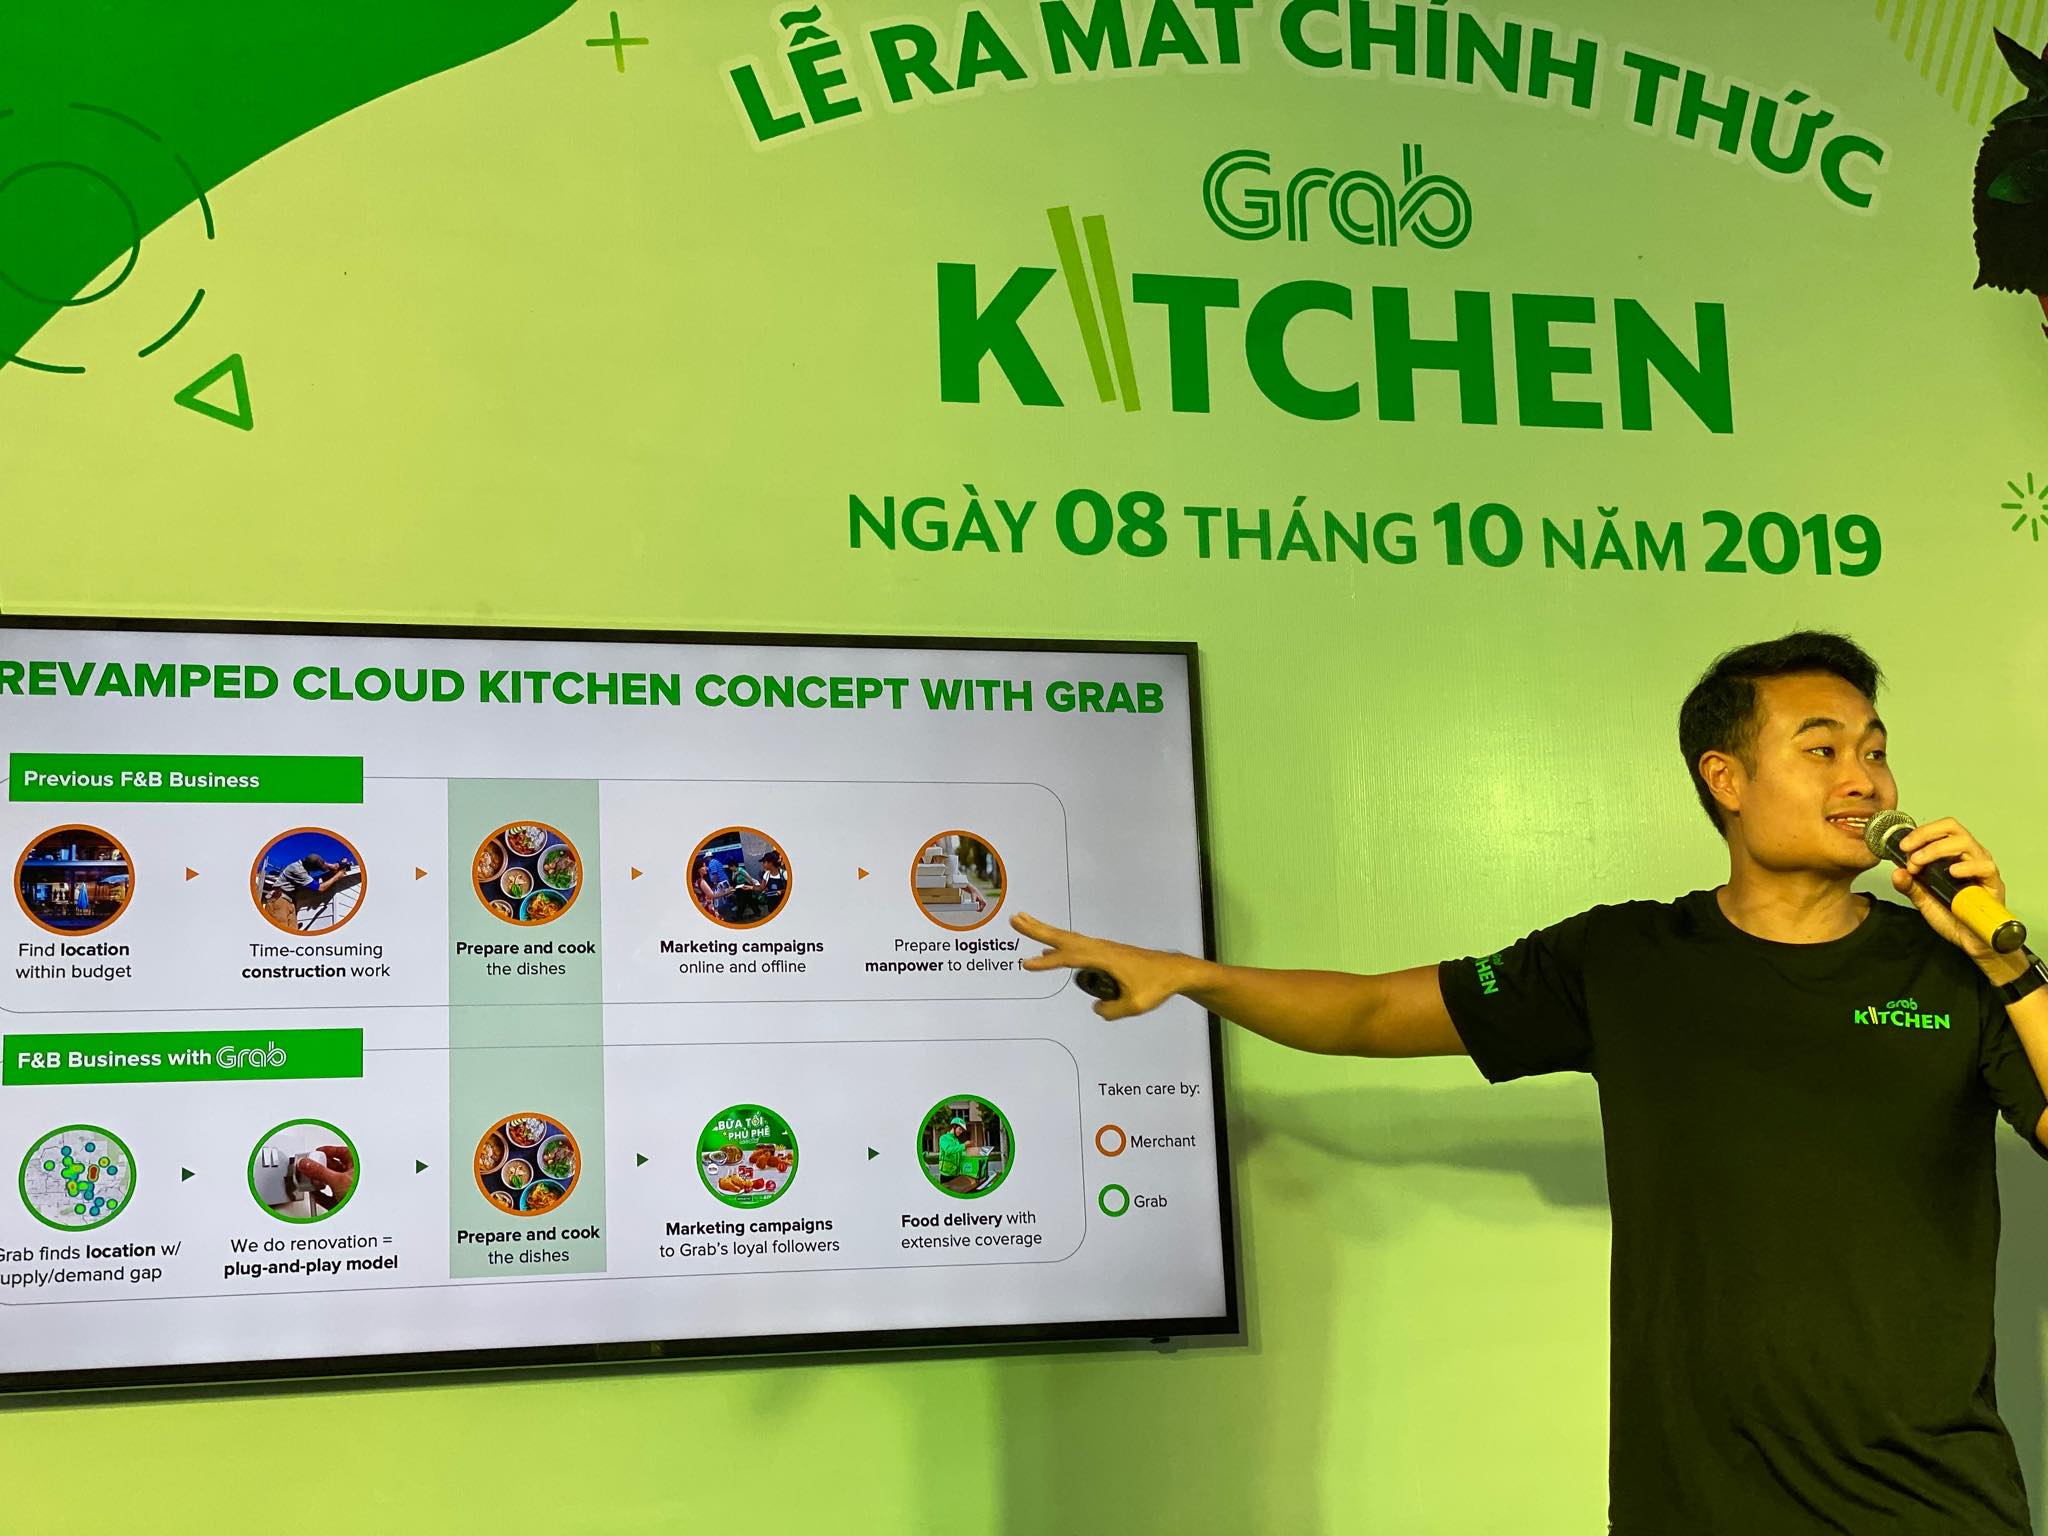 Grab chính thức ra mắt GrabKitchen tại TP.HCM, mở ra mô hình “căn bếp trung tâm" đầu tiên tại Việt Nam